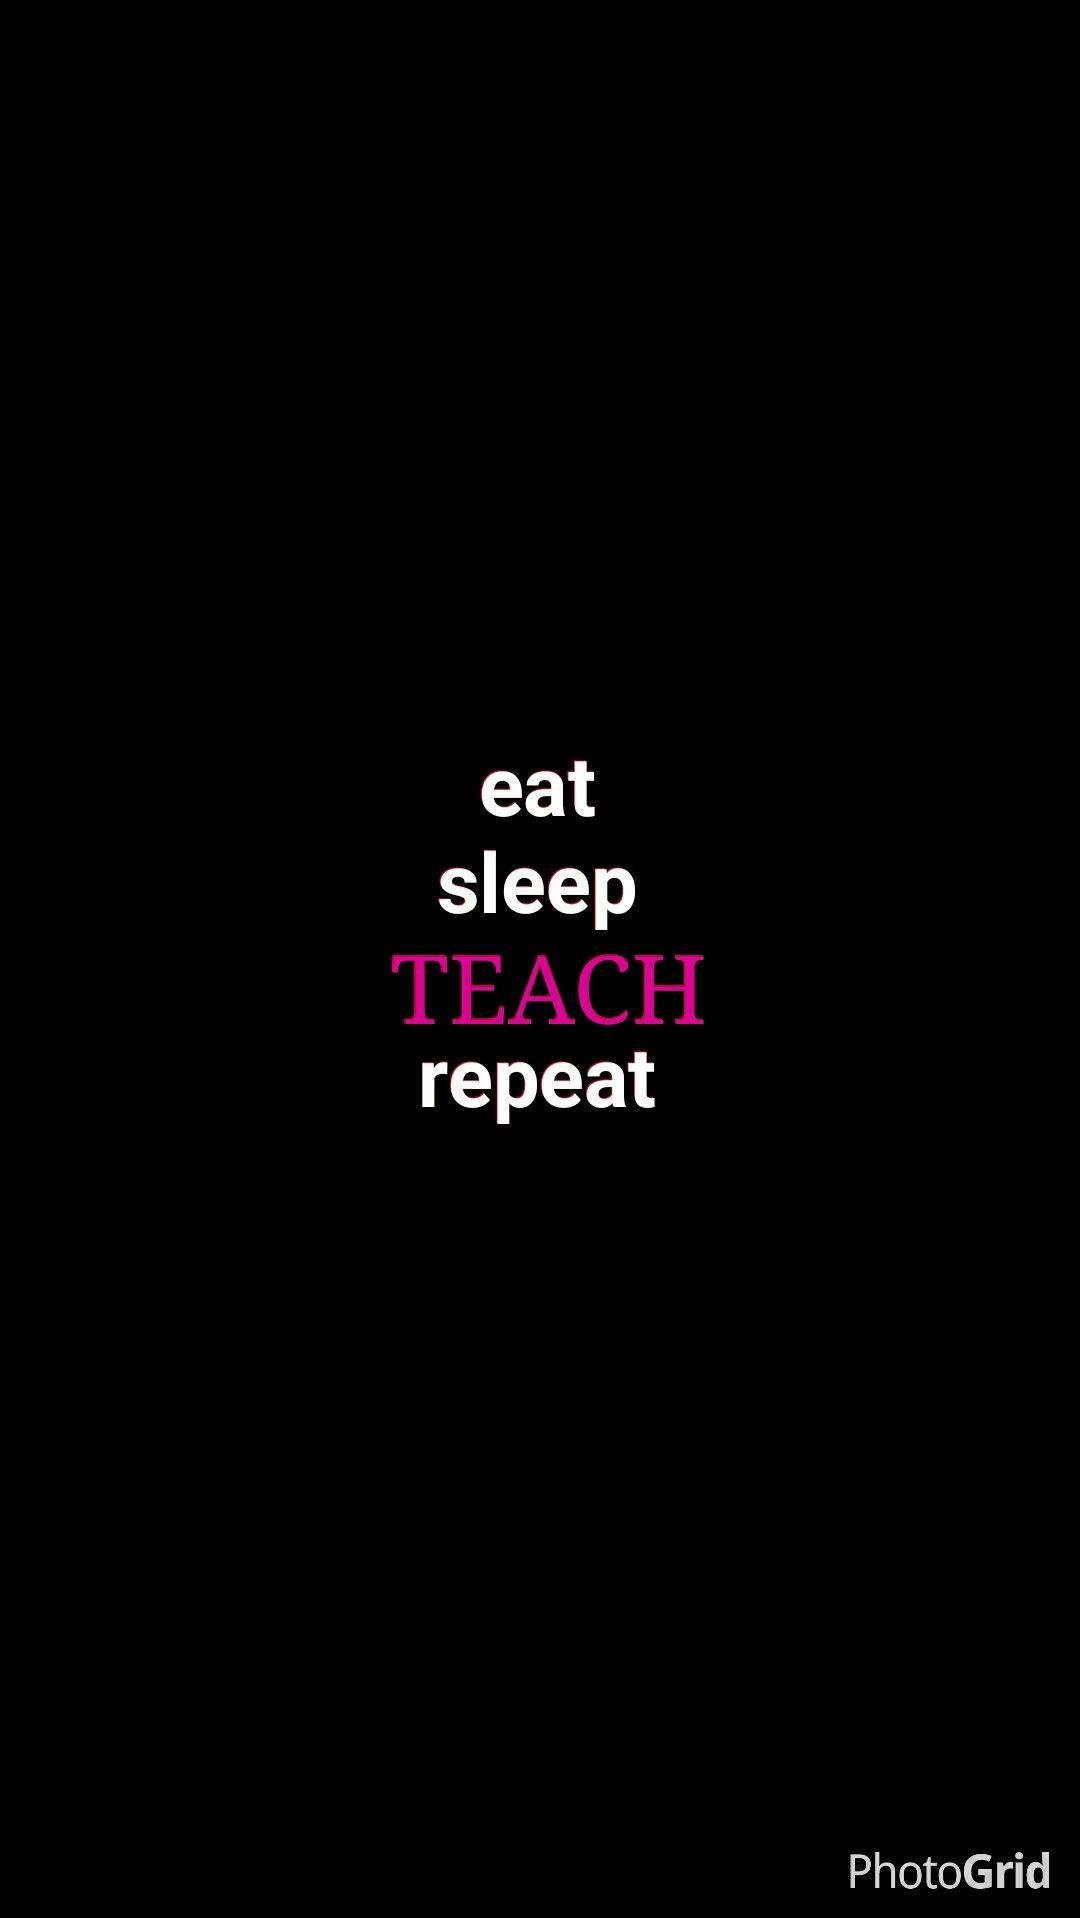 eat #sleep #teach #wallpaper #iphone. Molding young minds